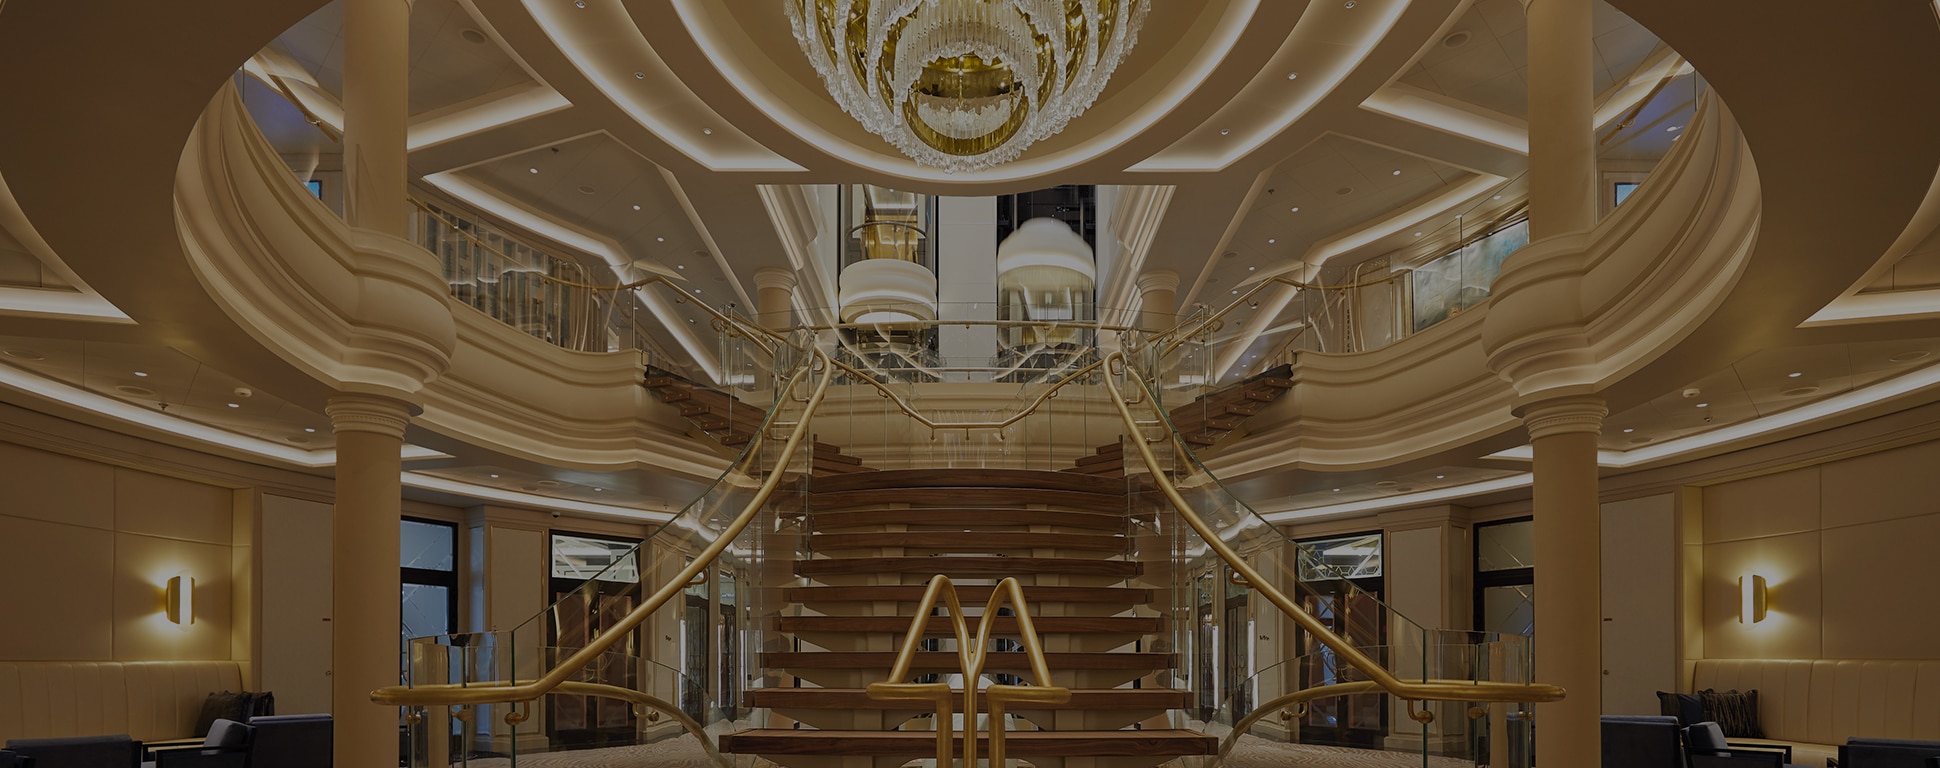 el candelabro y la escalera del atrio a bordo del Seven Seas Splendor